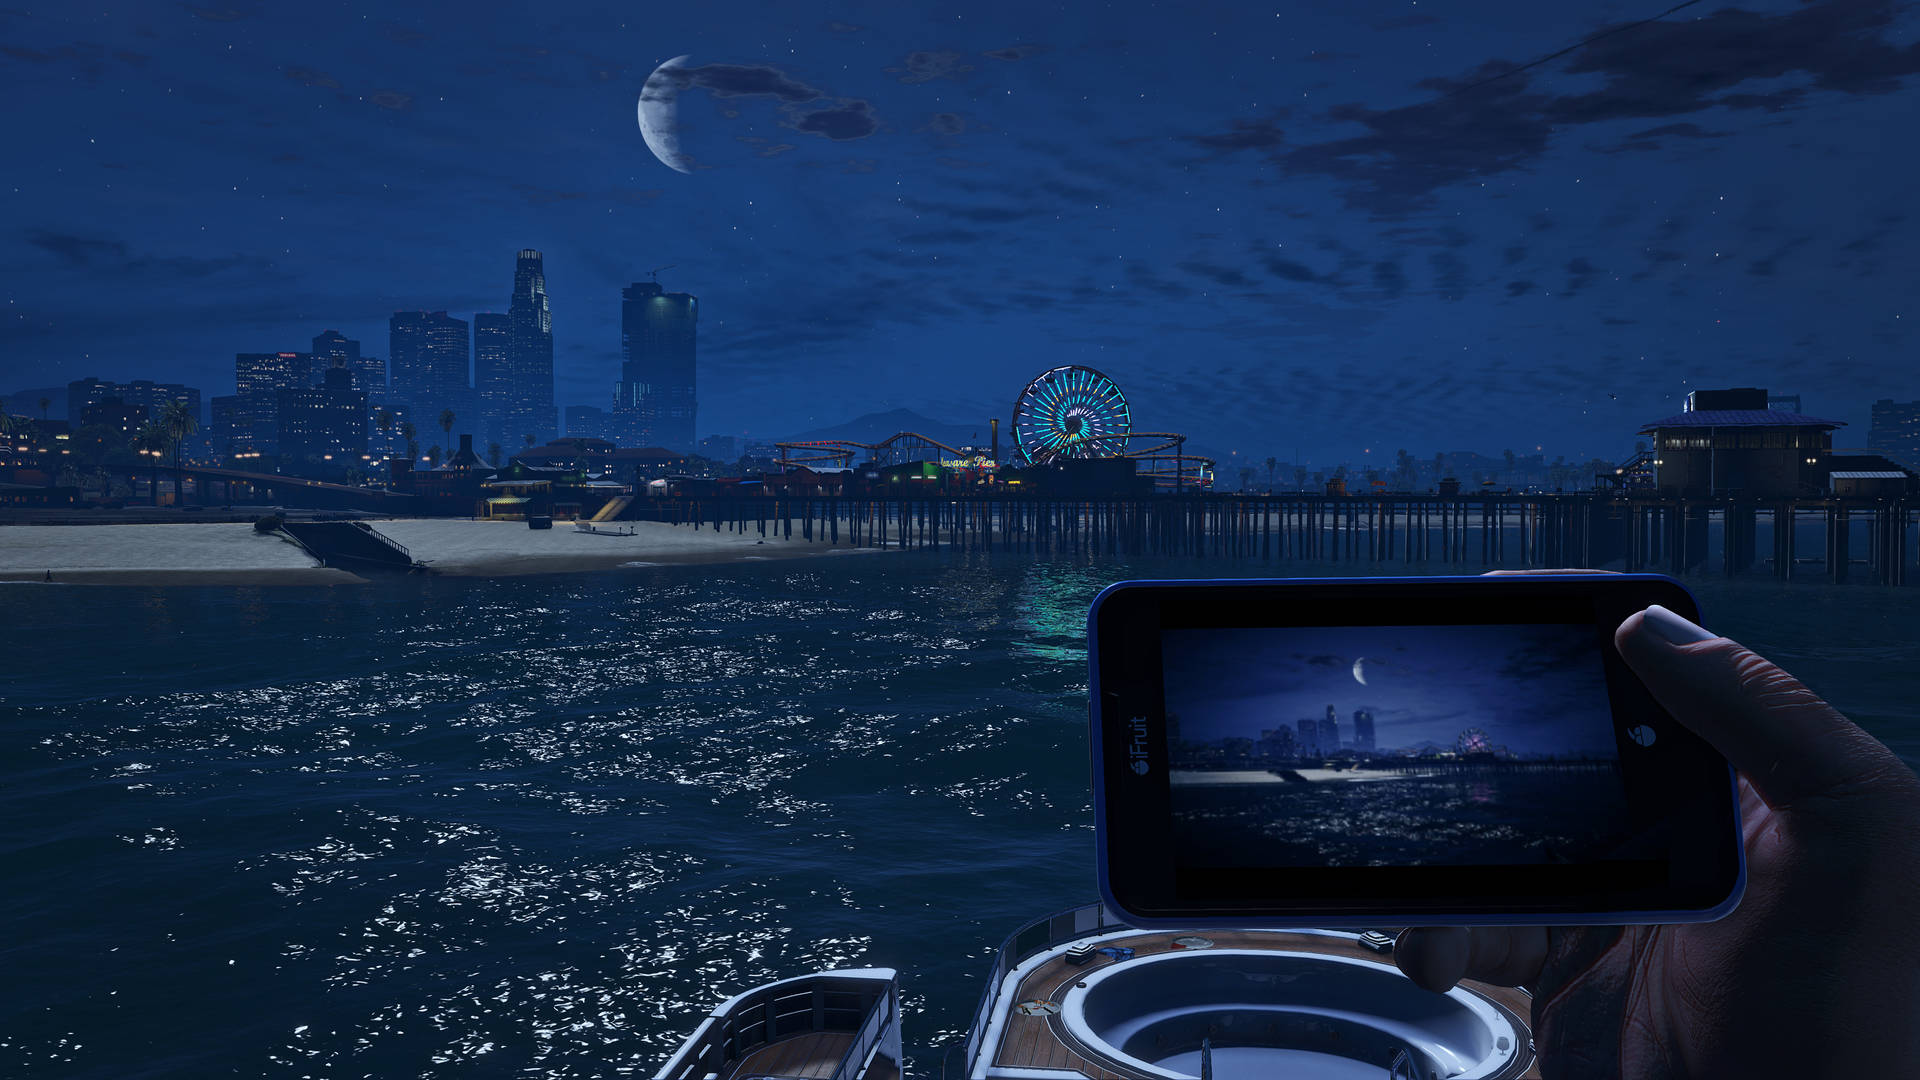 Grand Theft Auto V Del Perro Pier